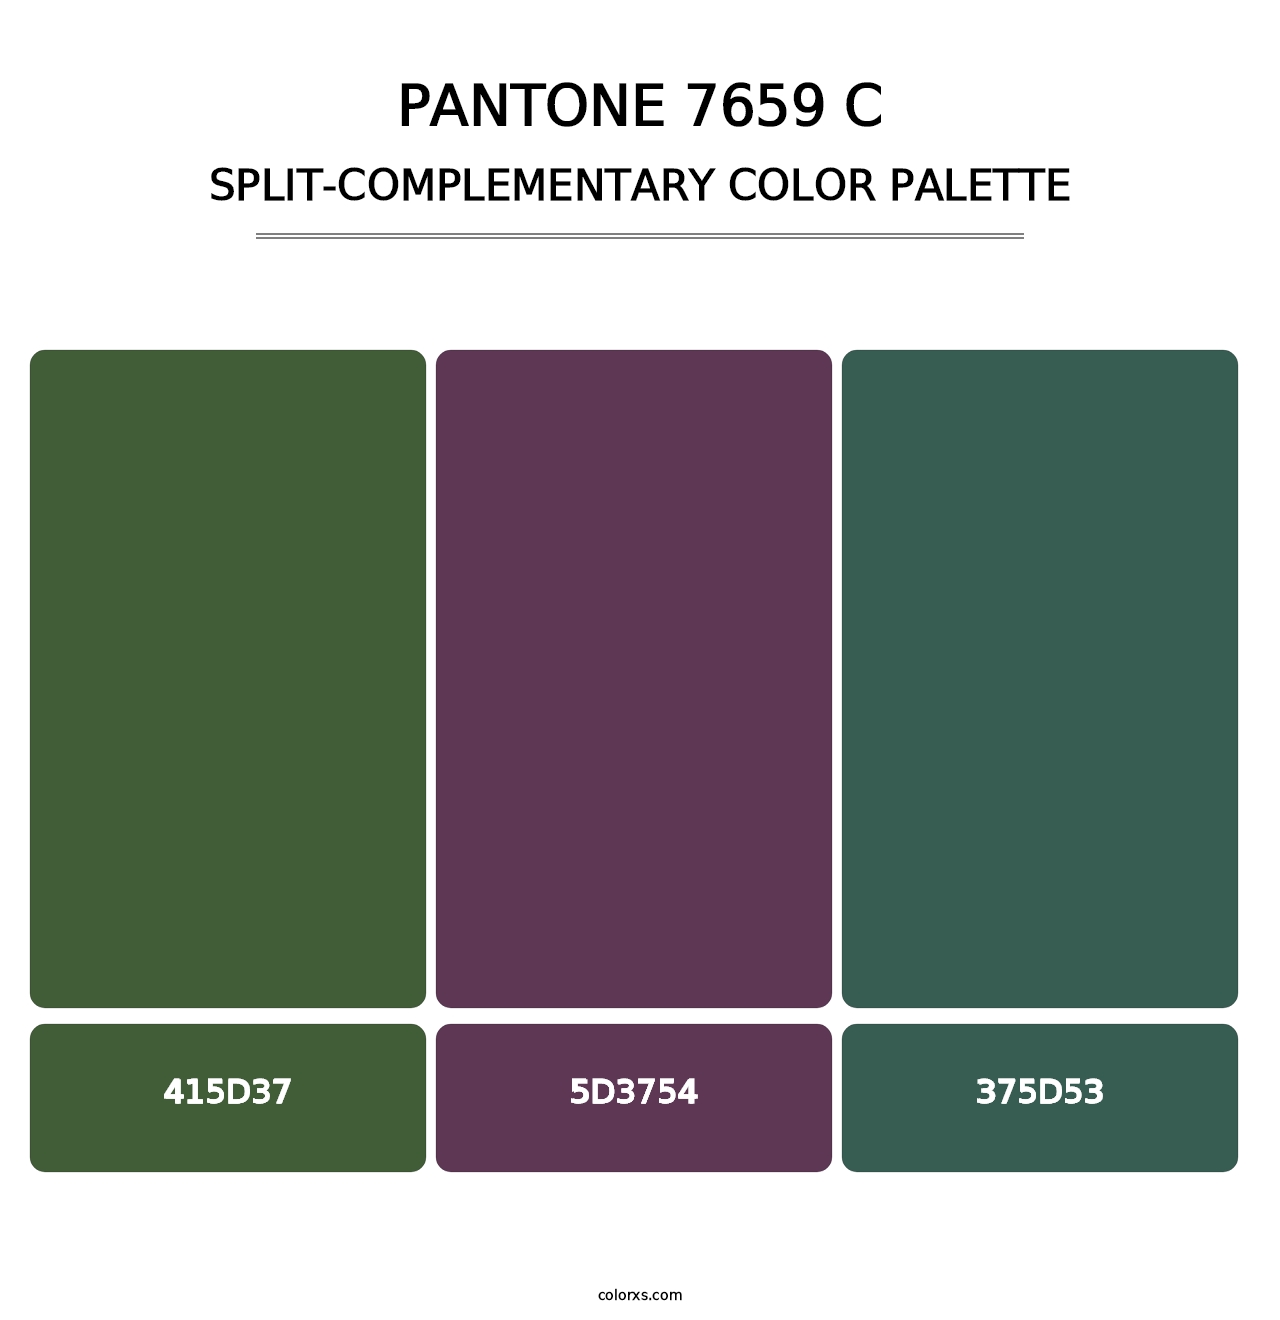 PANTONE 7659 C - Split-Complementary Color Palette